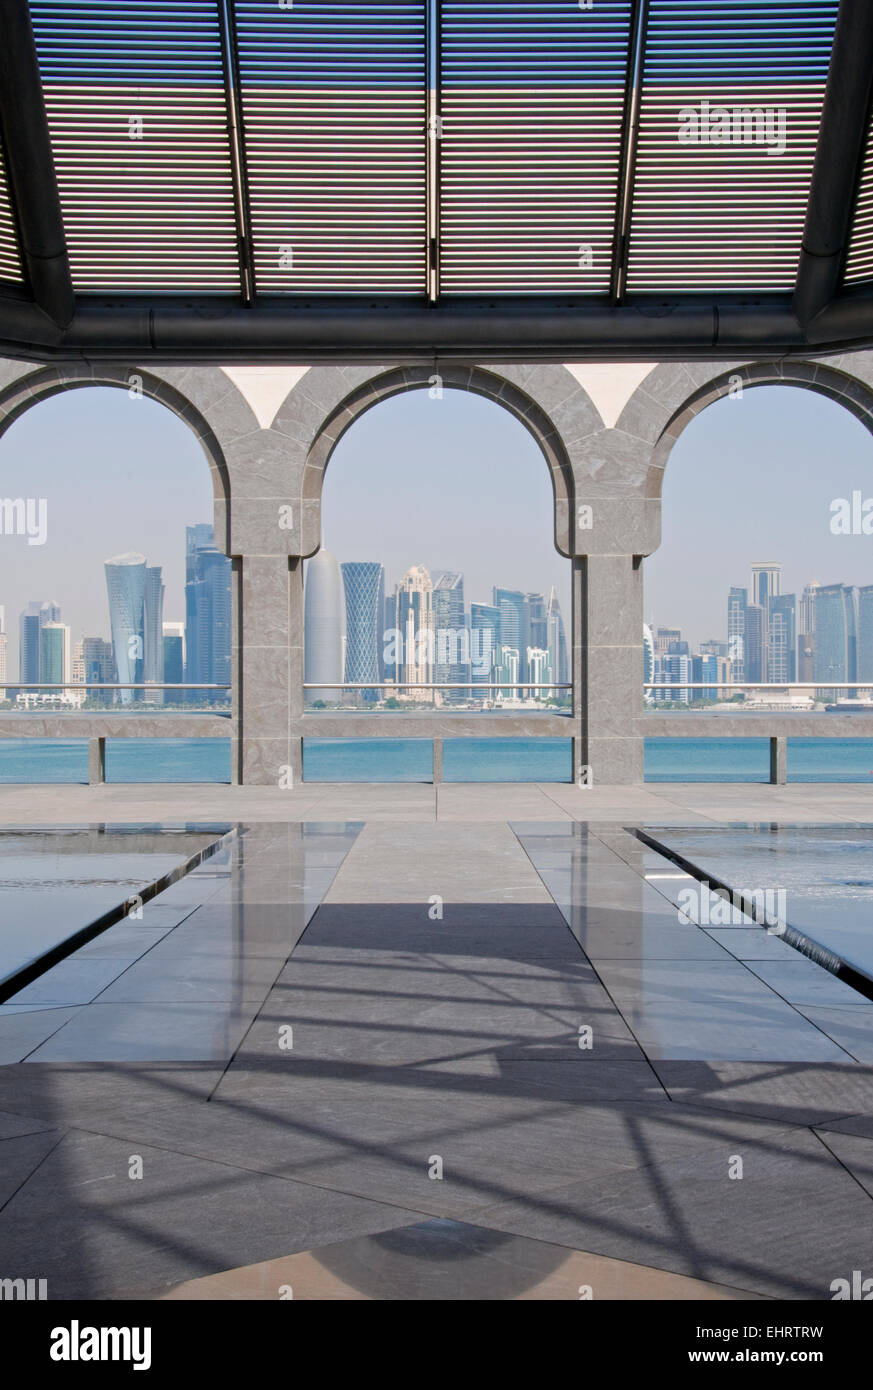 La Corniche, du Musée d'Art Islamique, Doha, Qatar. Moyen Orient Banque D'Images